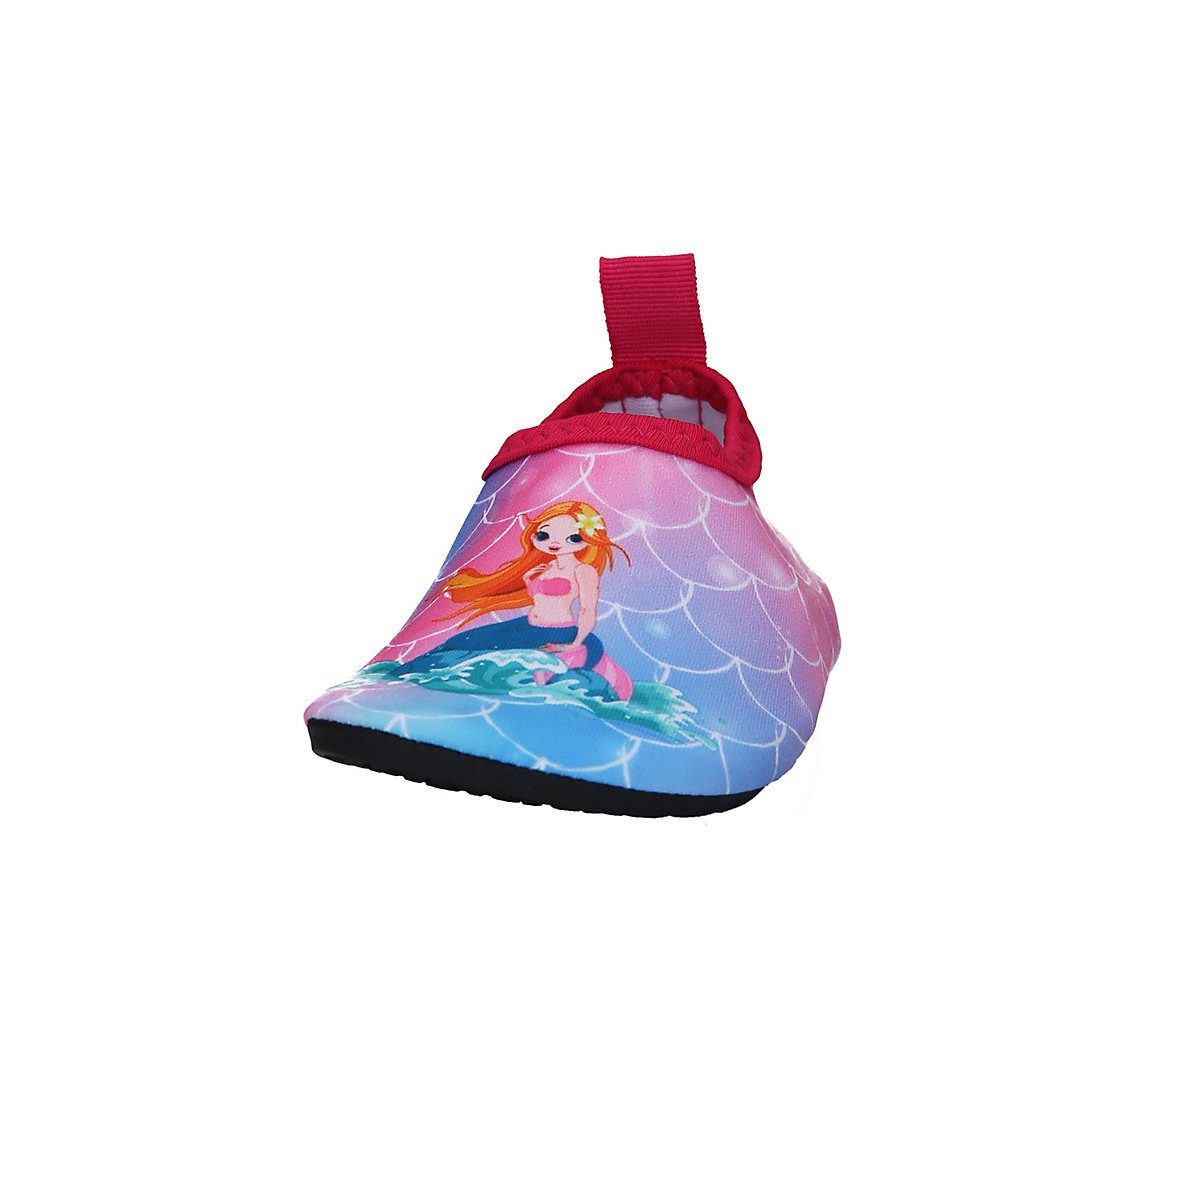 Schwimmschuhe, rutschhemmender Wasserschuhe Motiv flexible Passform, Badeschuhe rosa Meerjungfrau Badeschuh Playshoes Sohle mit Barfuß-Schuh